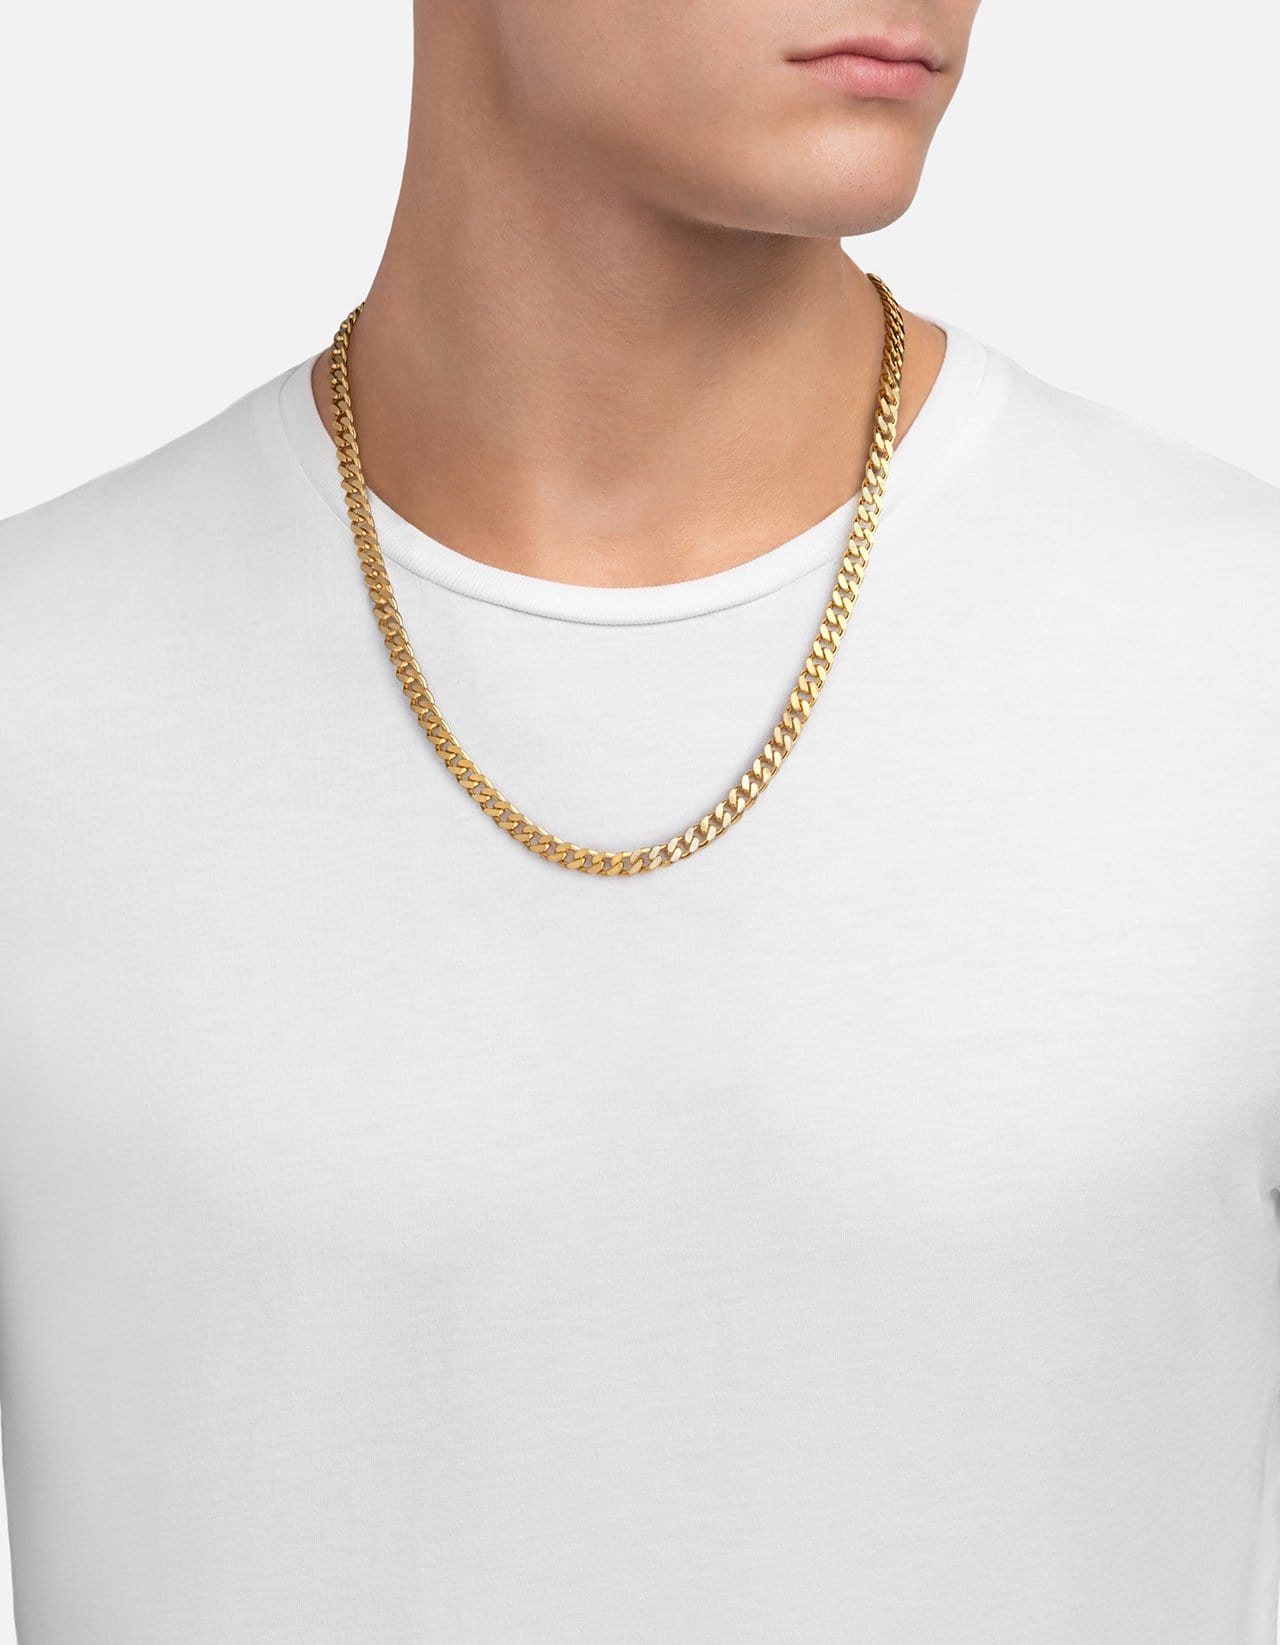 6.5mm Gold Vermeil Cuban Chain Necklace | Men's Necklaces | Miansai